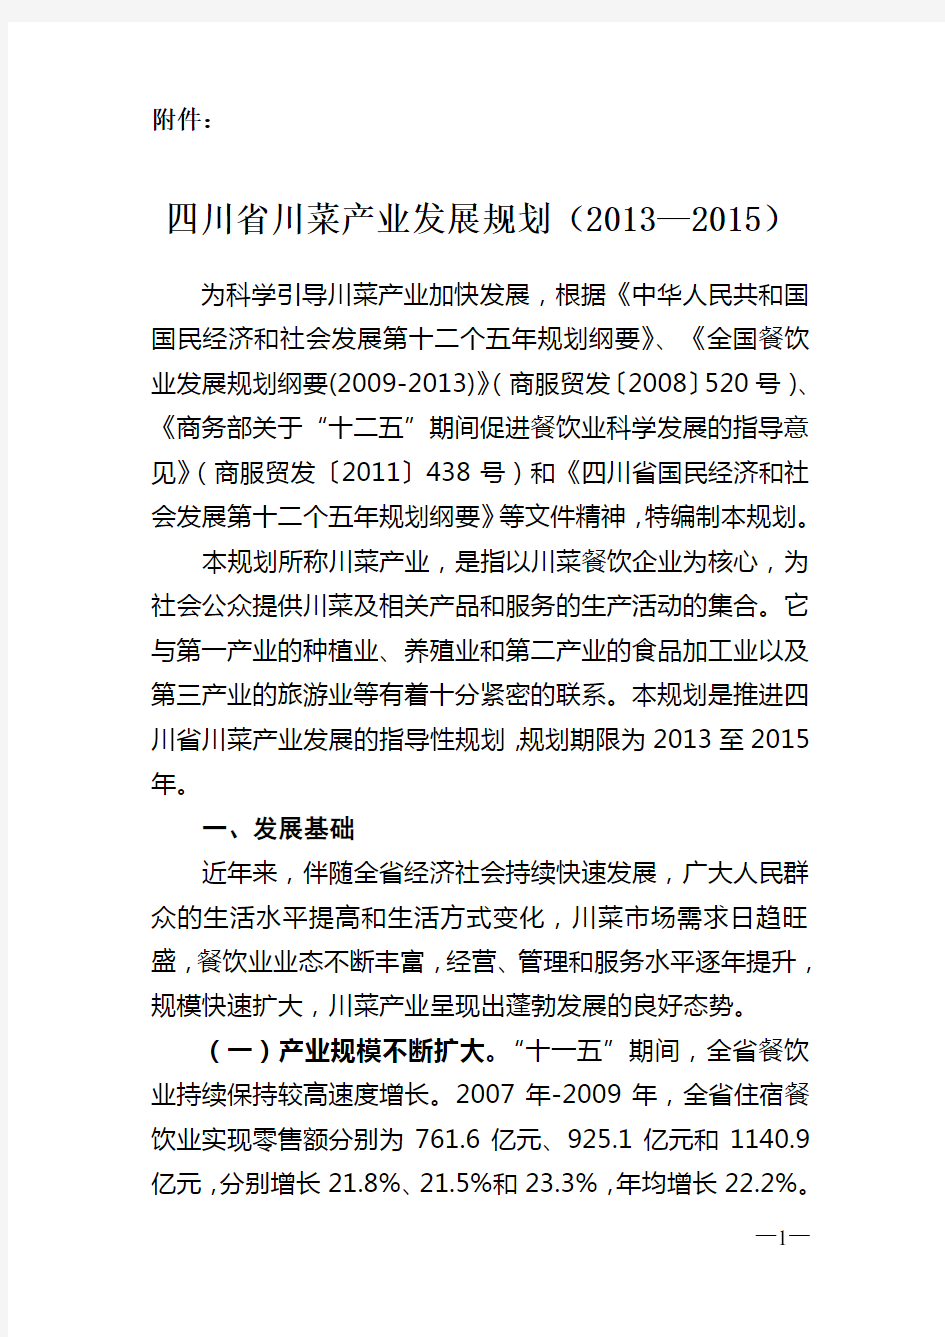 四川省川菜产业发展规划(2013—2015)